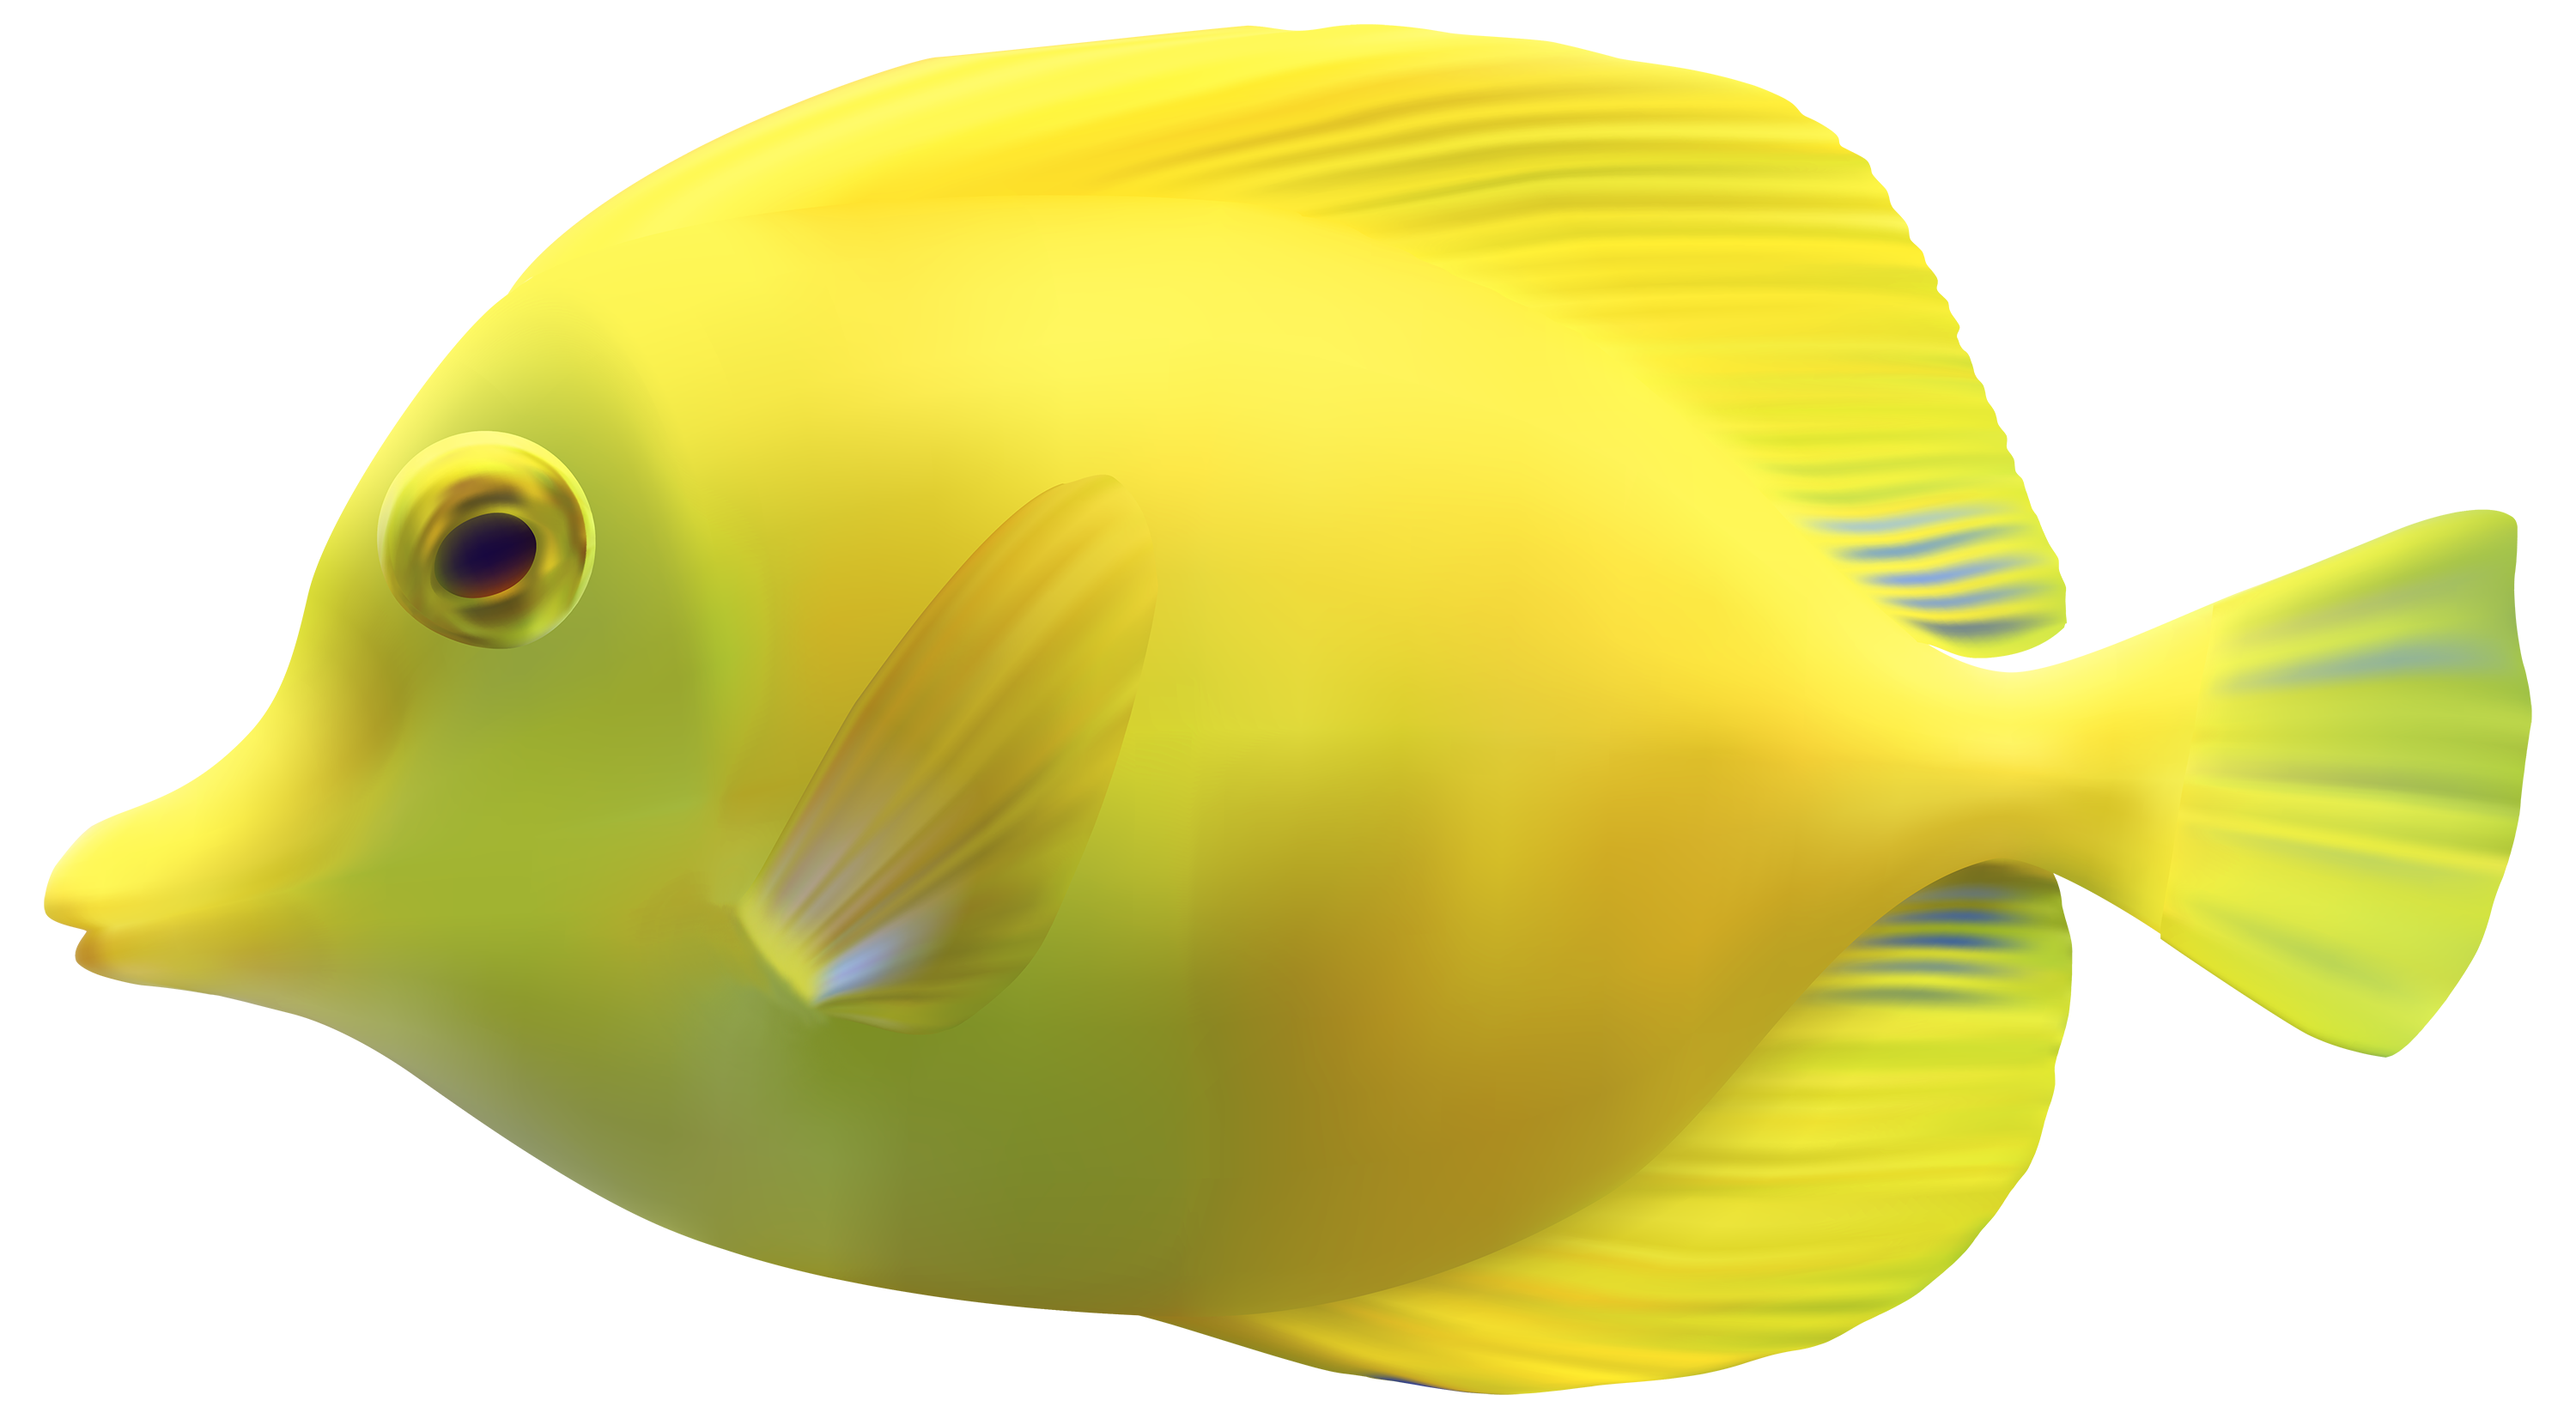 Orange Fish PNG Image image #